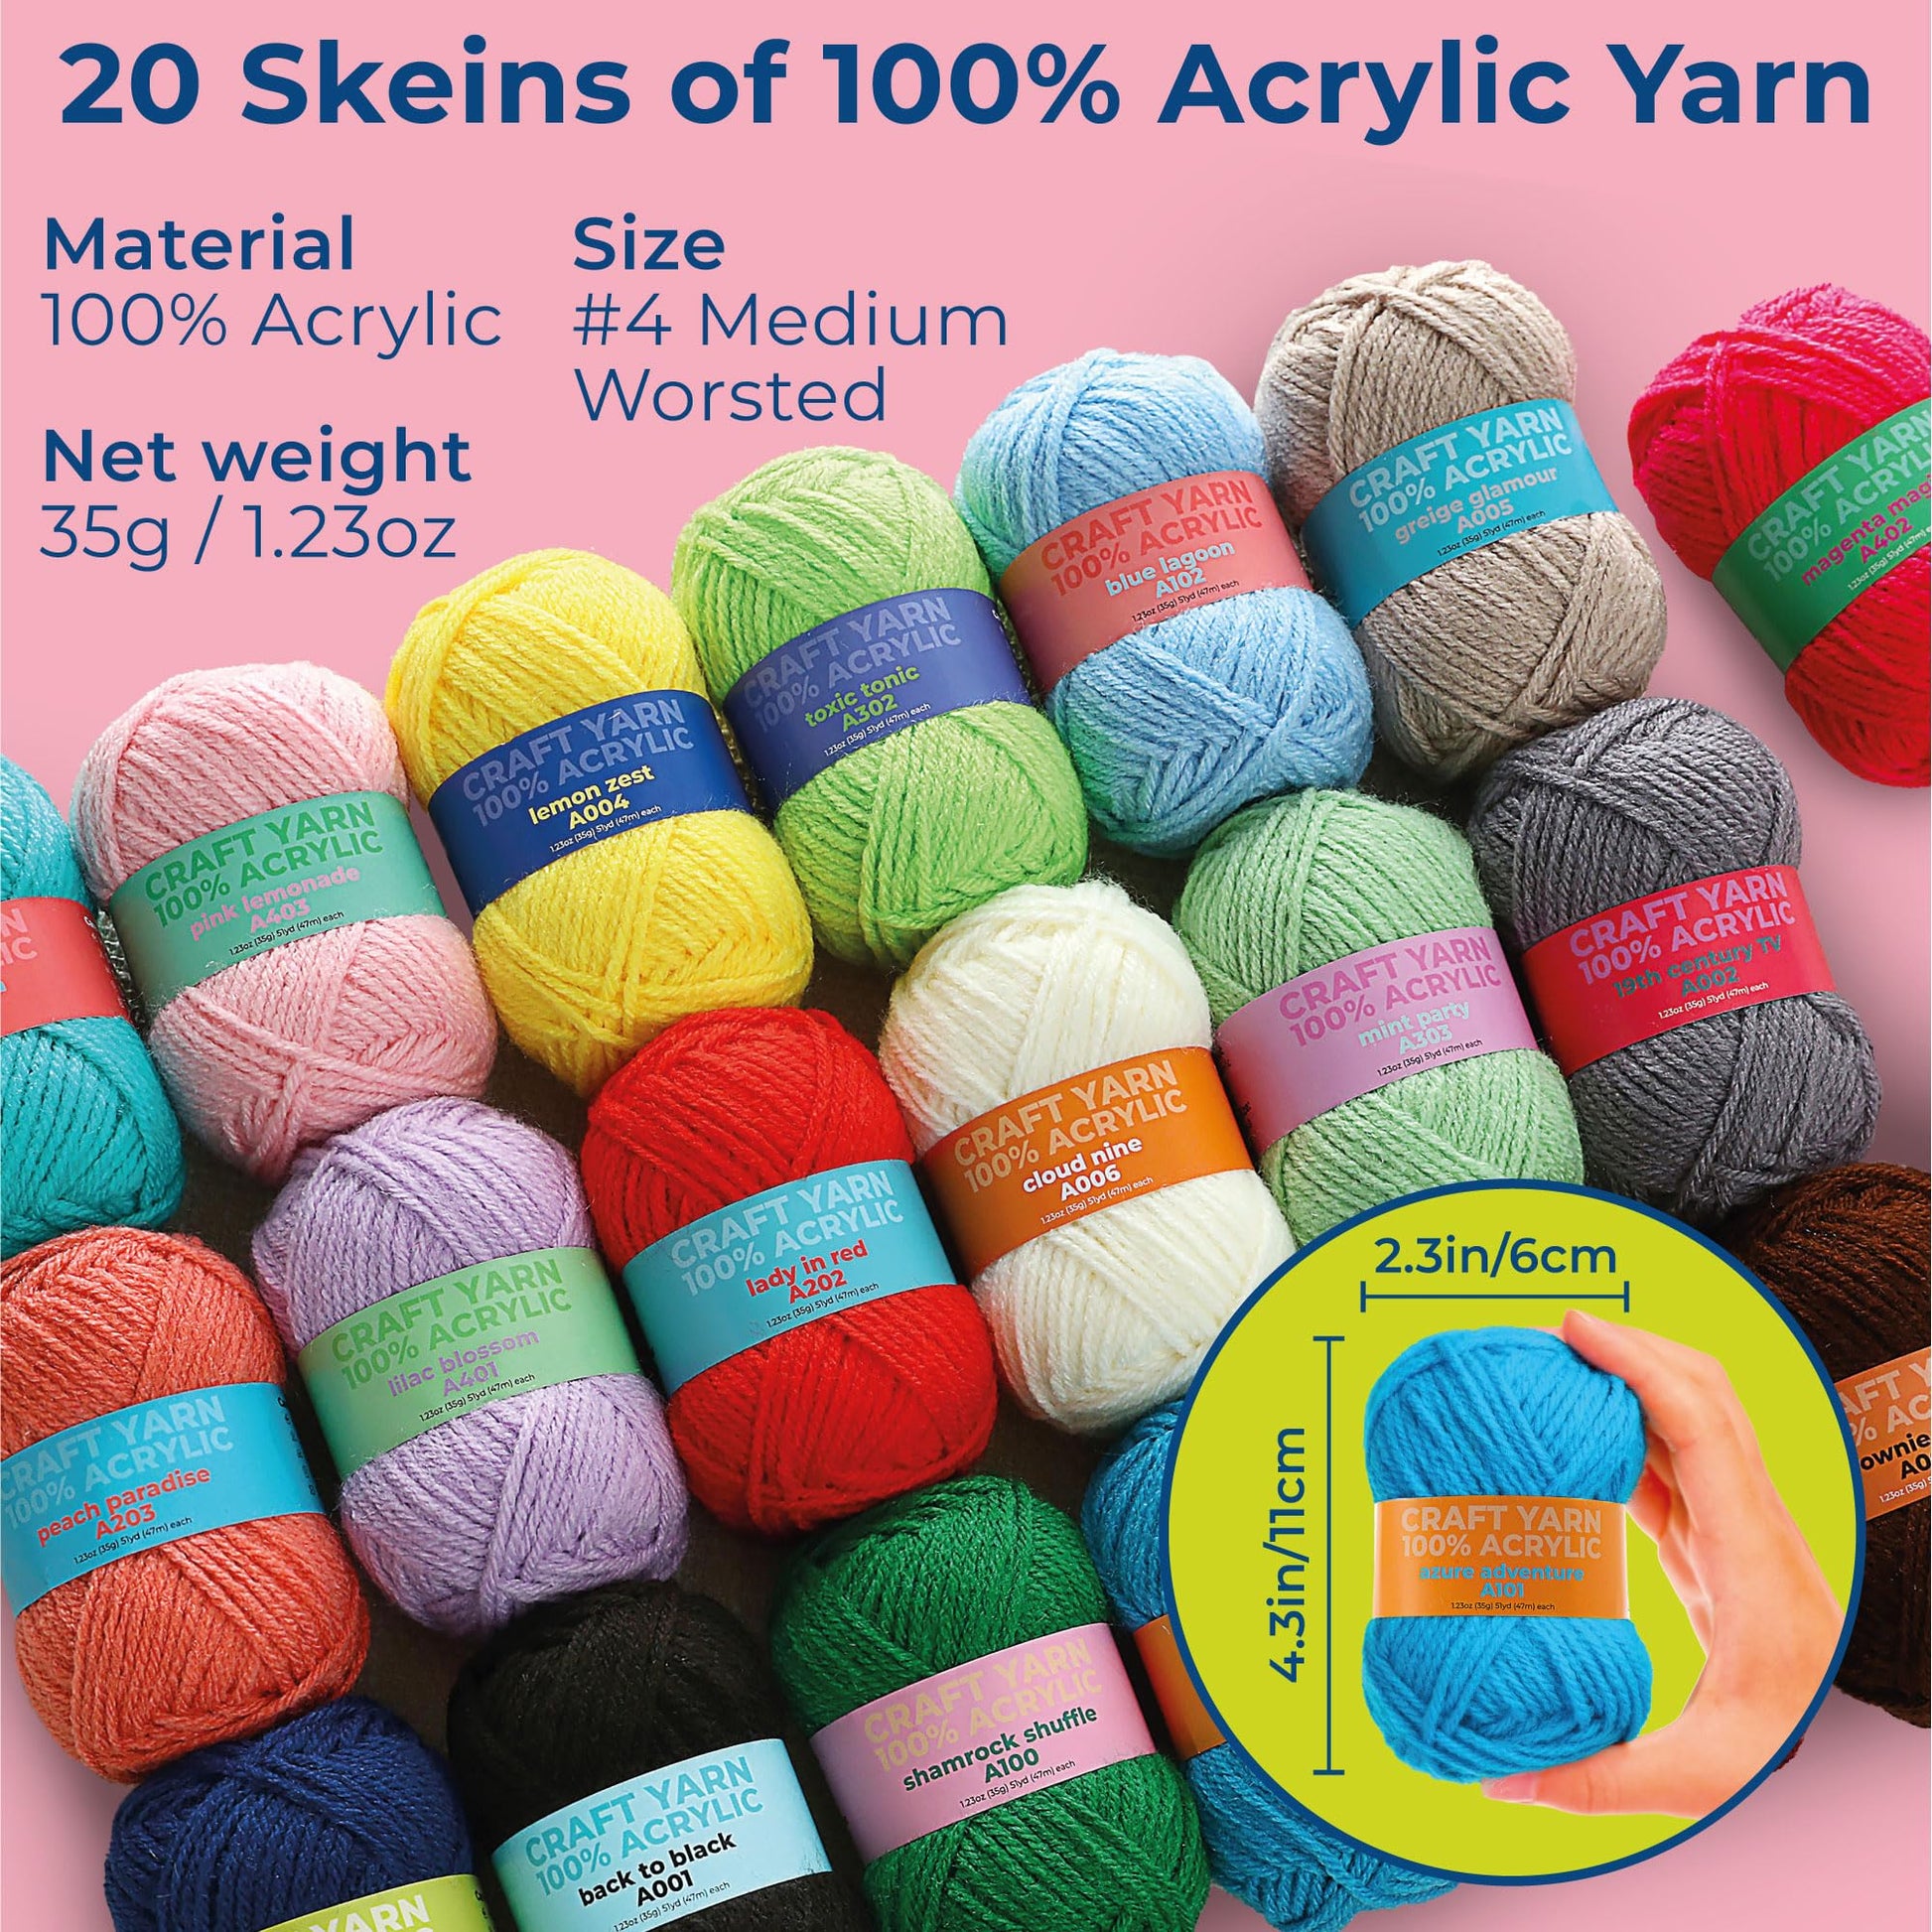 Cdrompy 65Pcs Crochet Kit,Crochet Kit for Beginners,Crochet Beginners Kit  with 8 Colors Crochet Yarn and Crocheting Accessories Set,Crochet Kit for